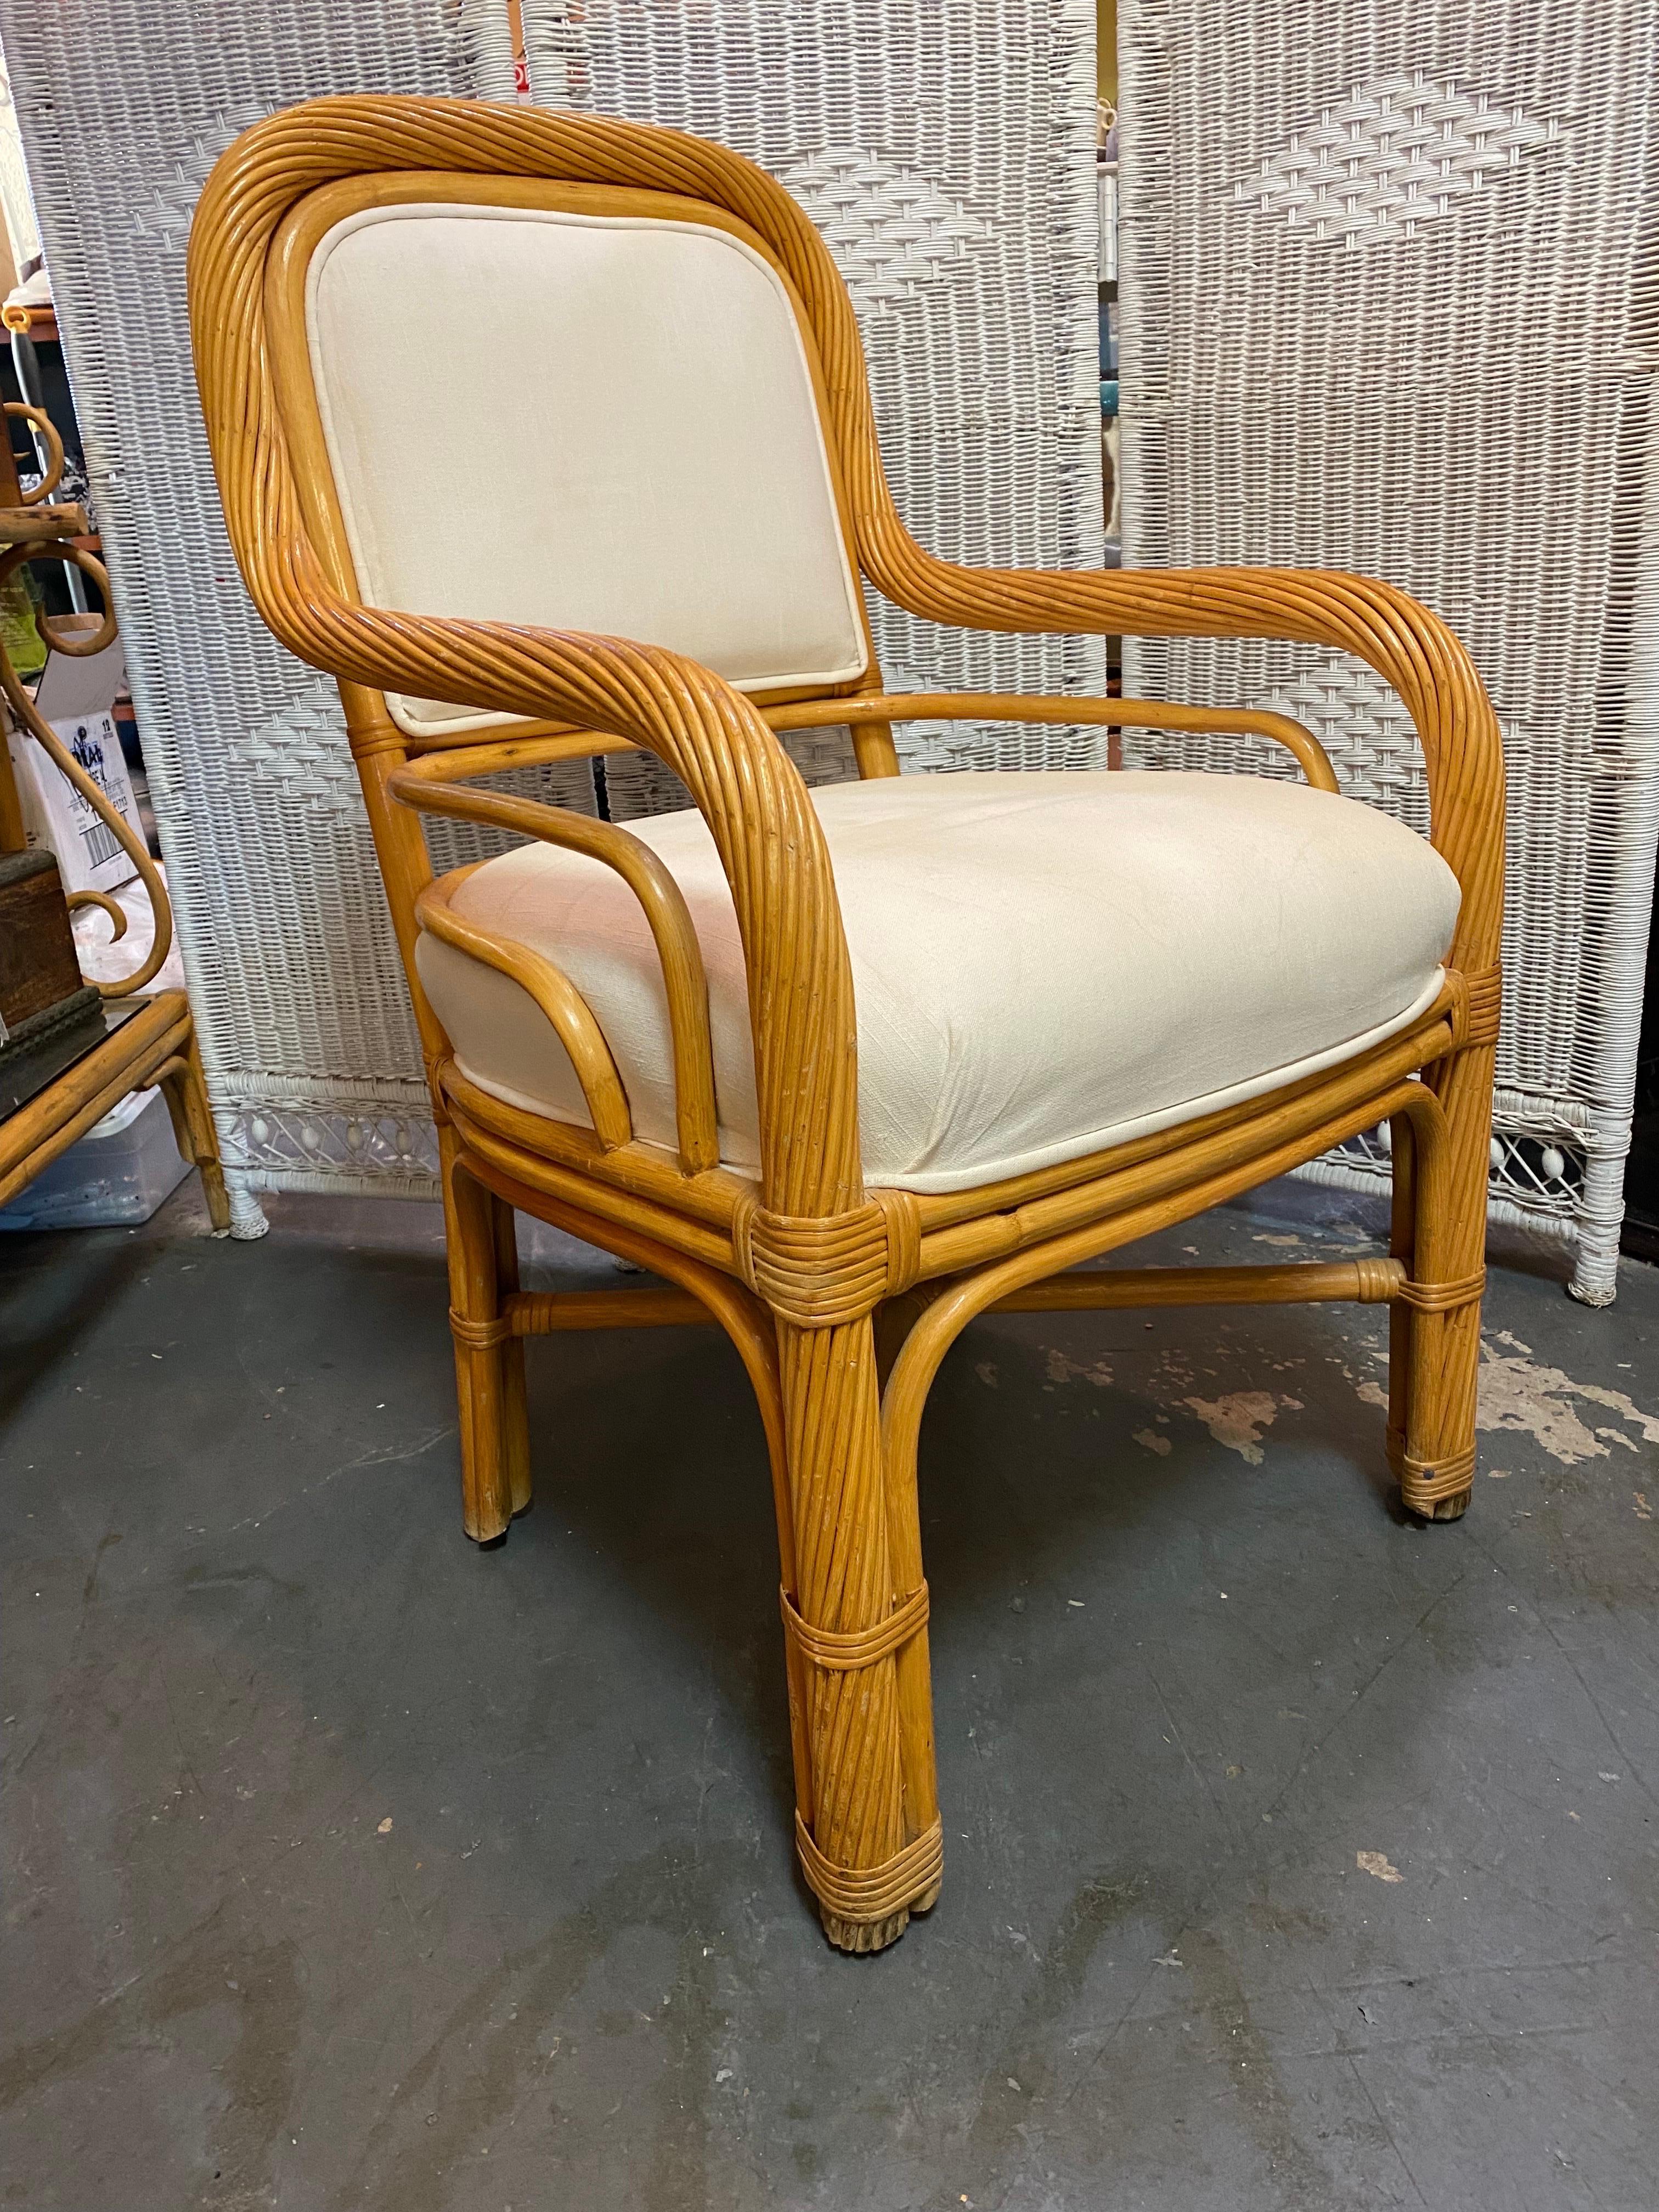 Schöner Beistellstuhl aus Rattan und Bambus im Stil der Jahrhundertmitte mit weißer Polsterung. Dies ist ein ausgezeichnetes Boho-Chic-Möbelstück, das sich gut als Beistellstuhl in Ihrem Haus oder als Terrassenstuhl im Freien eignet.

Dieser Stuhl